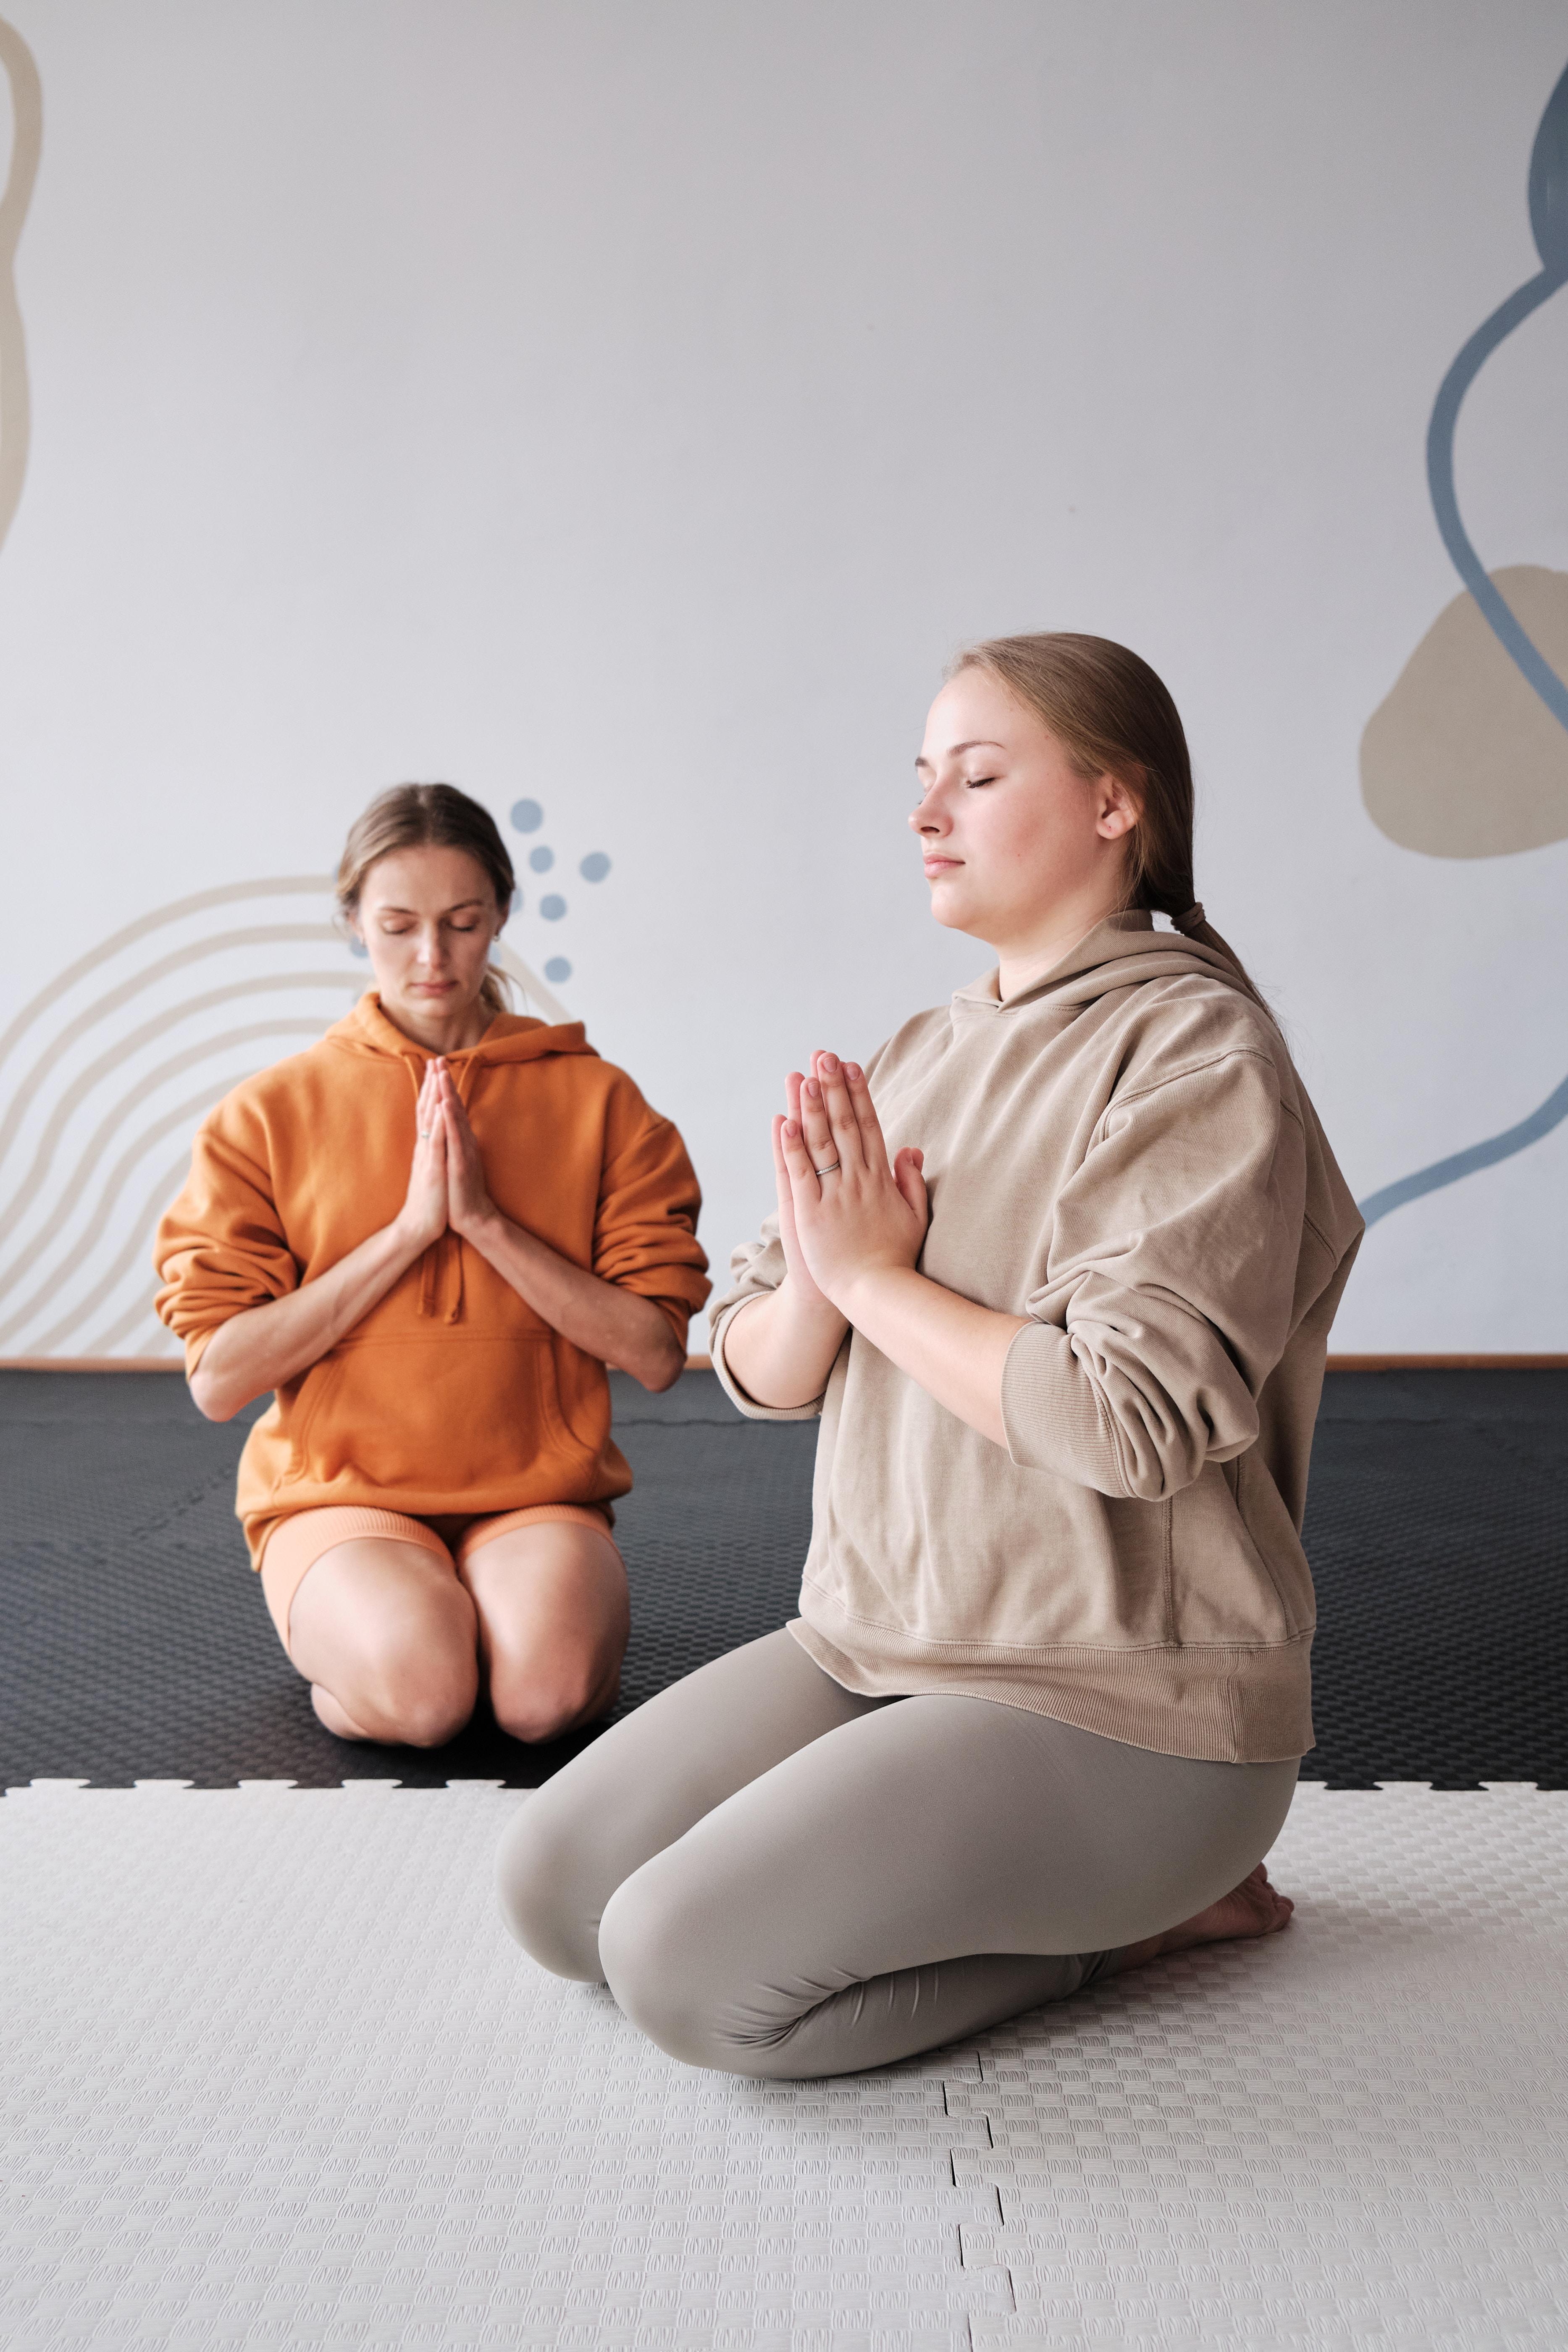 Co daje medytacja? Korzyści z medytowania. Korzyści z medytacji. Technika dla ciała i umysłu. Medytacja dla początkujących. Od czego warto zacząć, aby czerpać jak największe korzyści płynące z medytacji. 